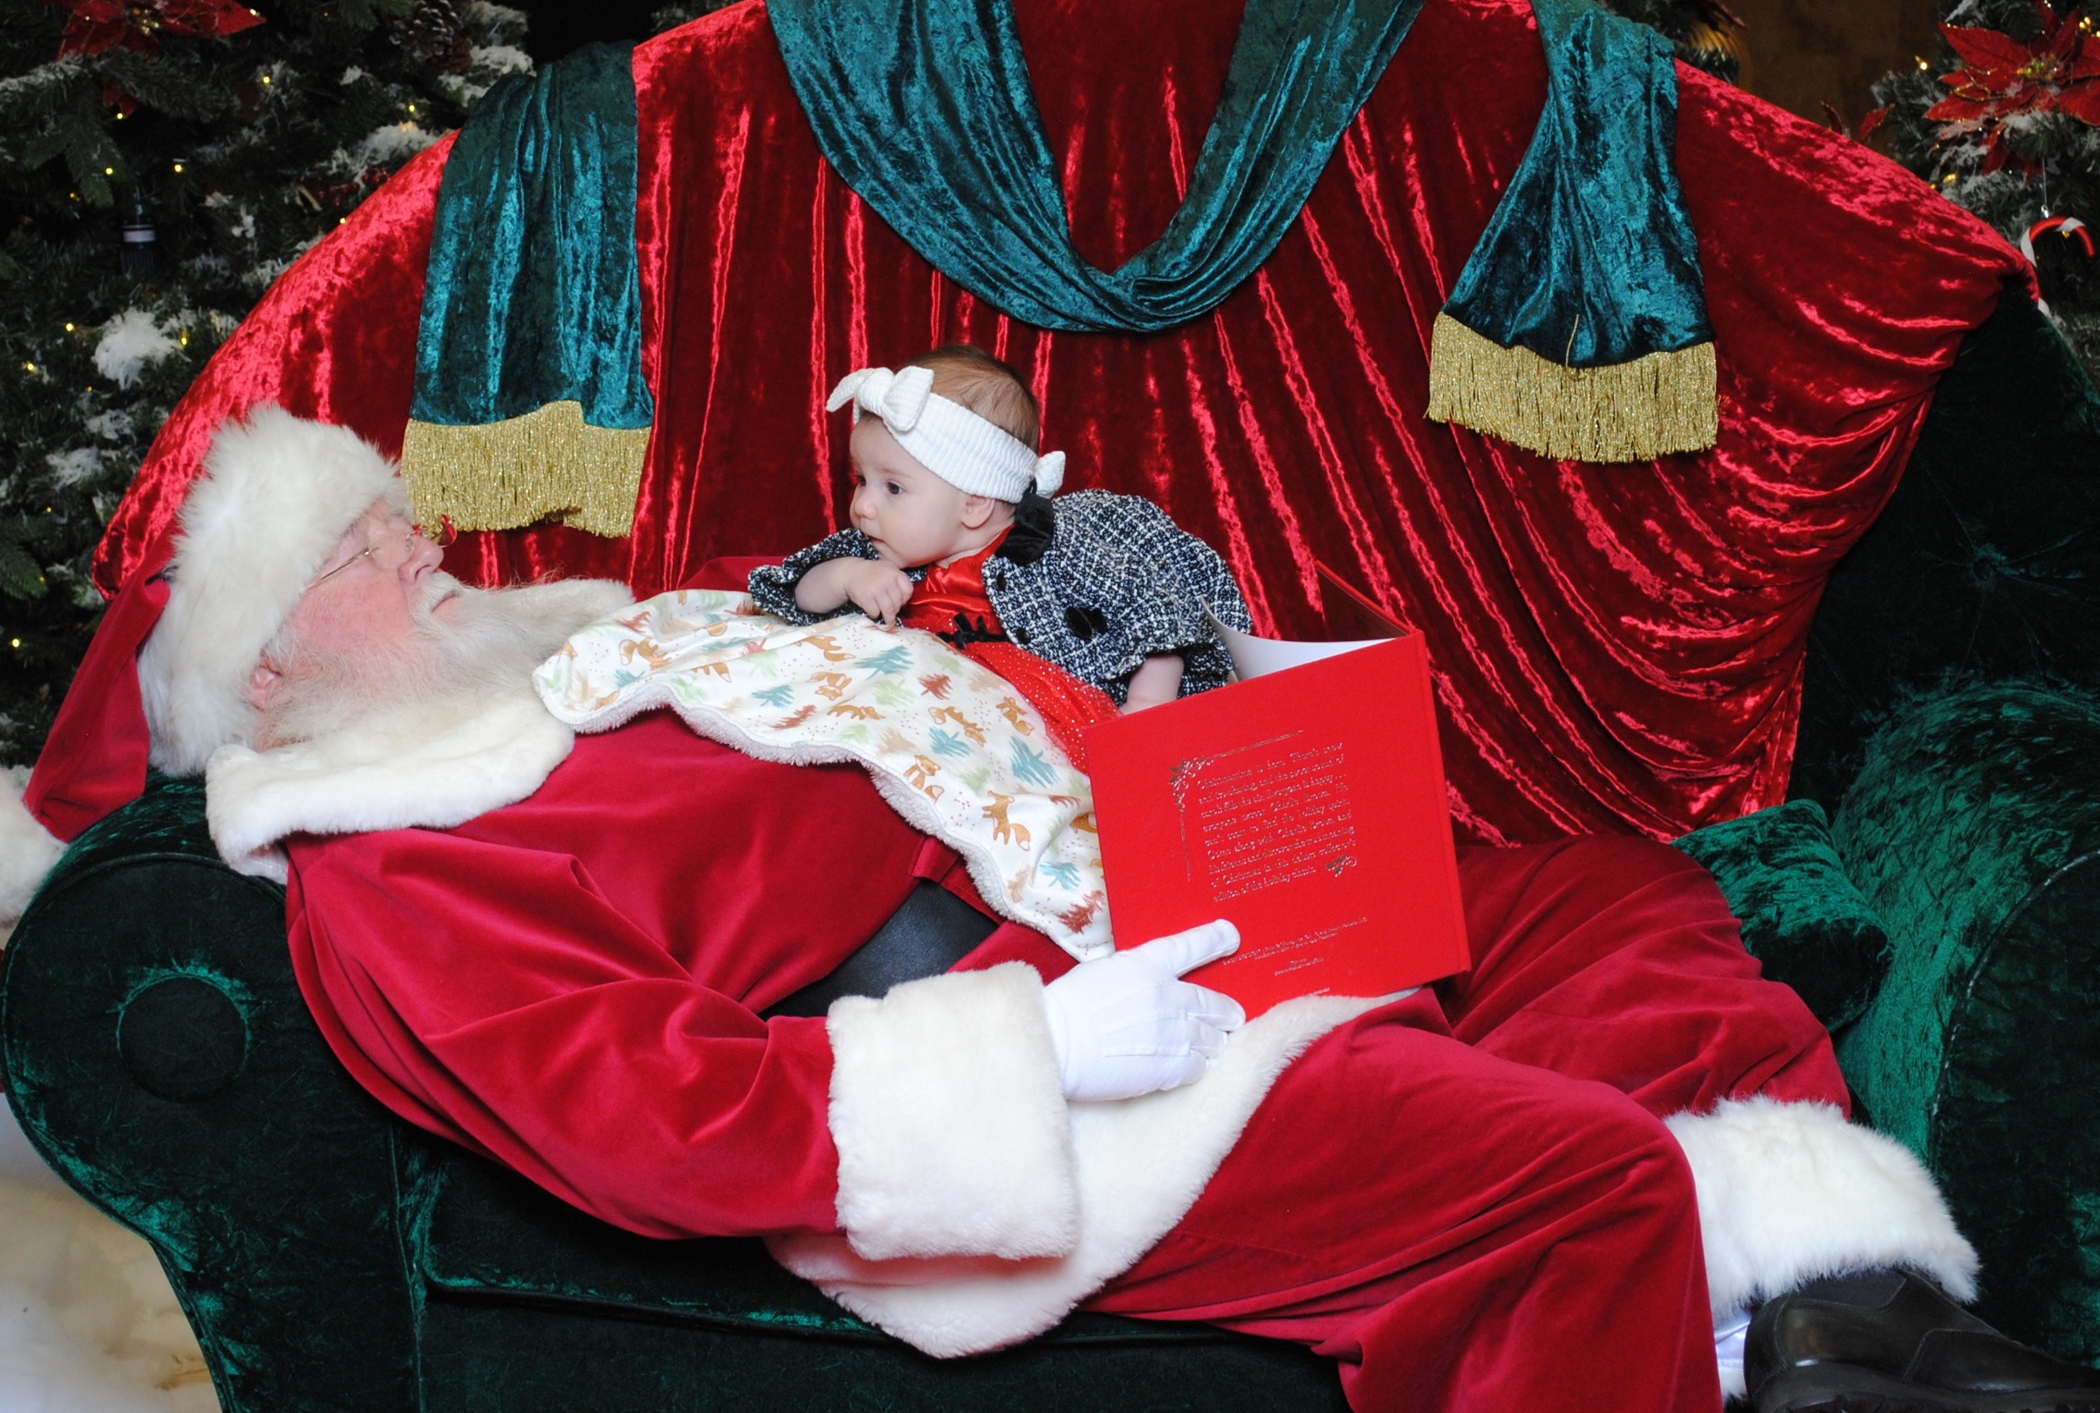 Santa Claus calls asleep while reading a book to a baby